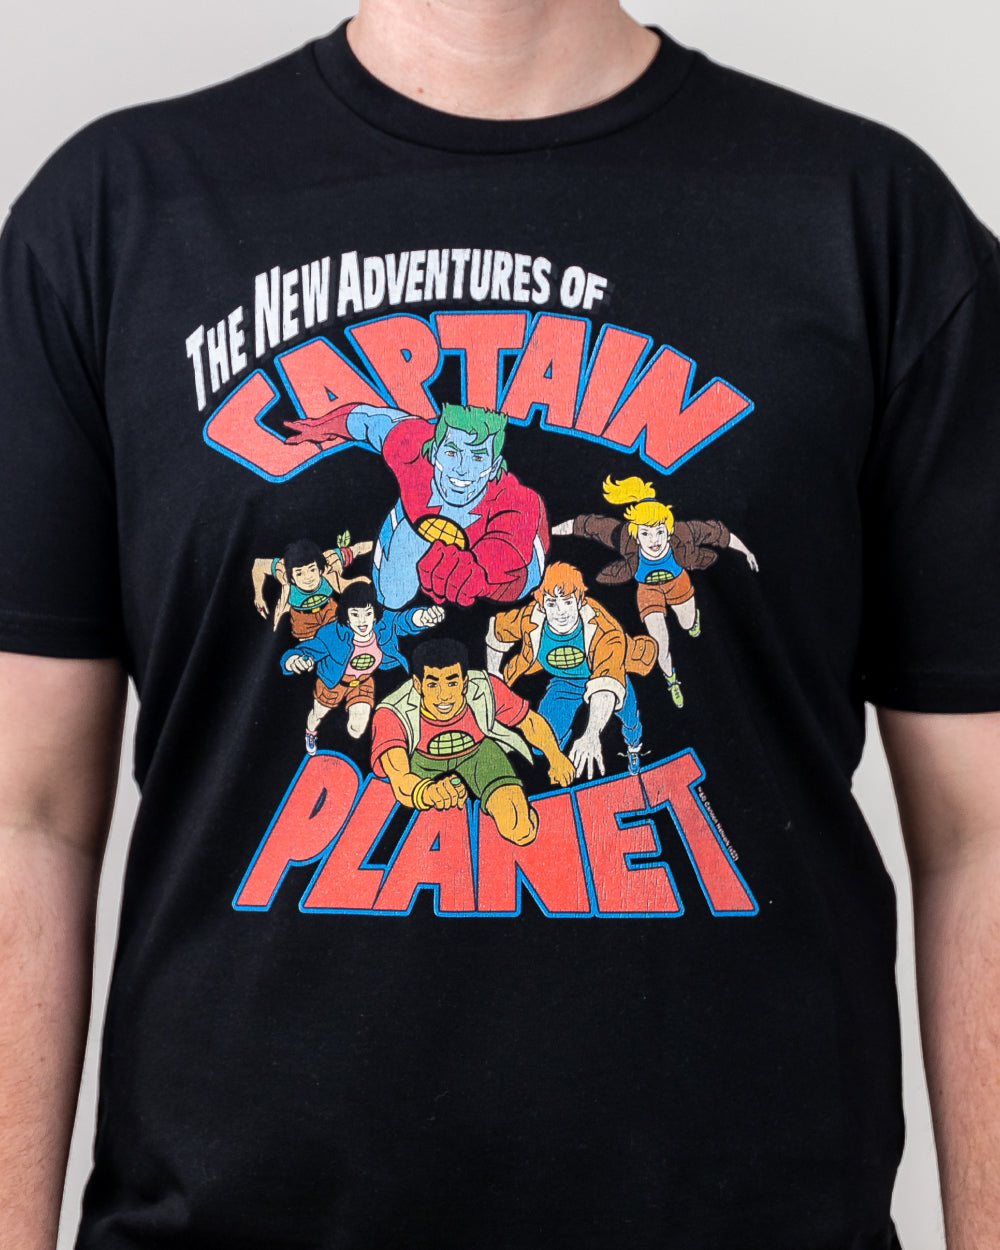 Captain Planet &Planeteers T-Shirt Australia Online #colour_black